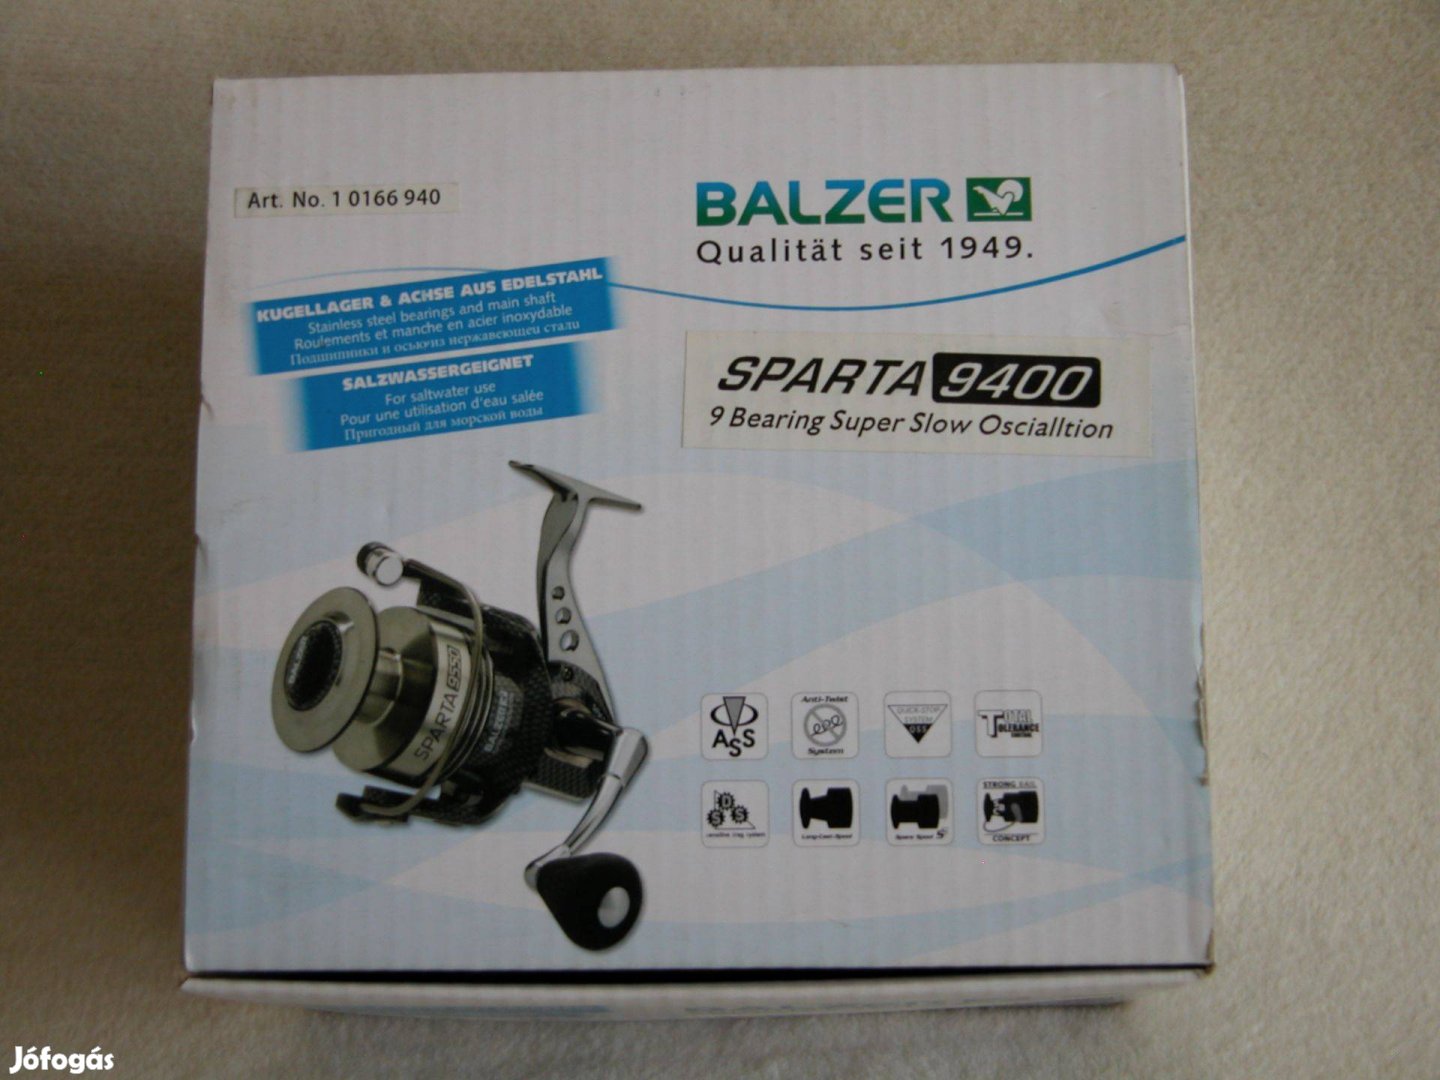 Balzer Sparta 9400